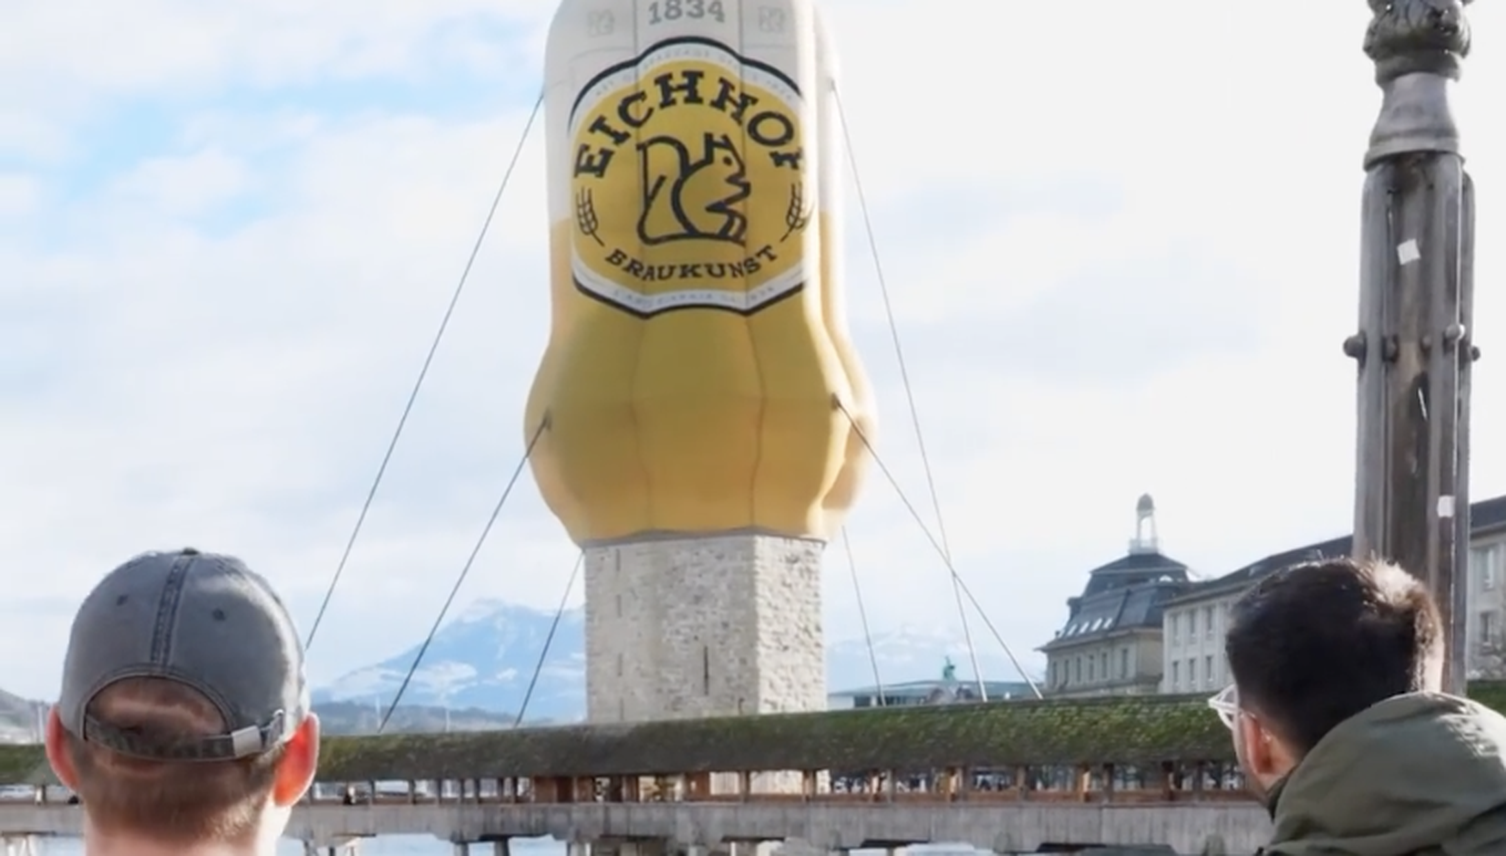 Luzerner Wasserturm als Bierdose verkleidet?